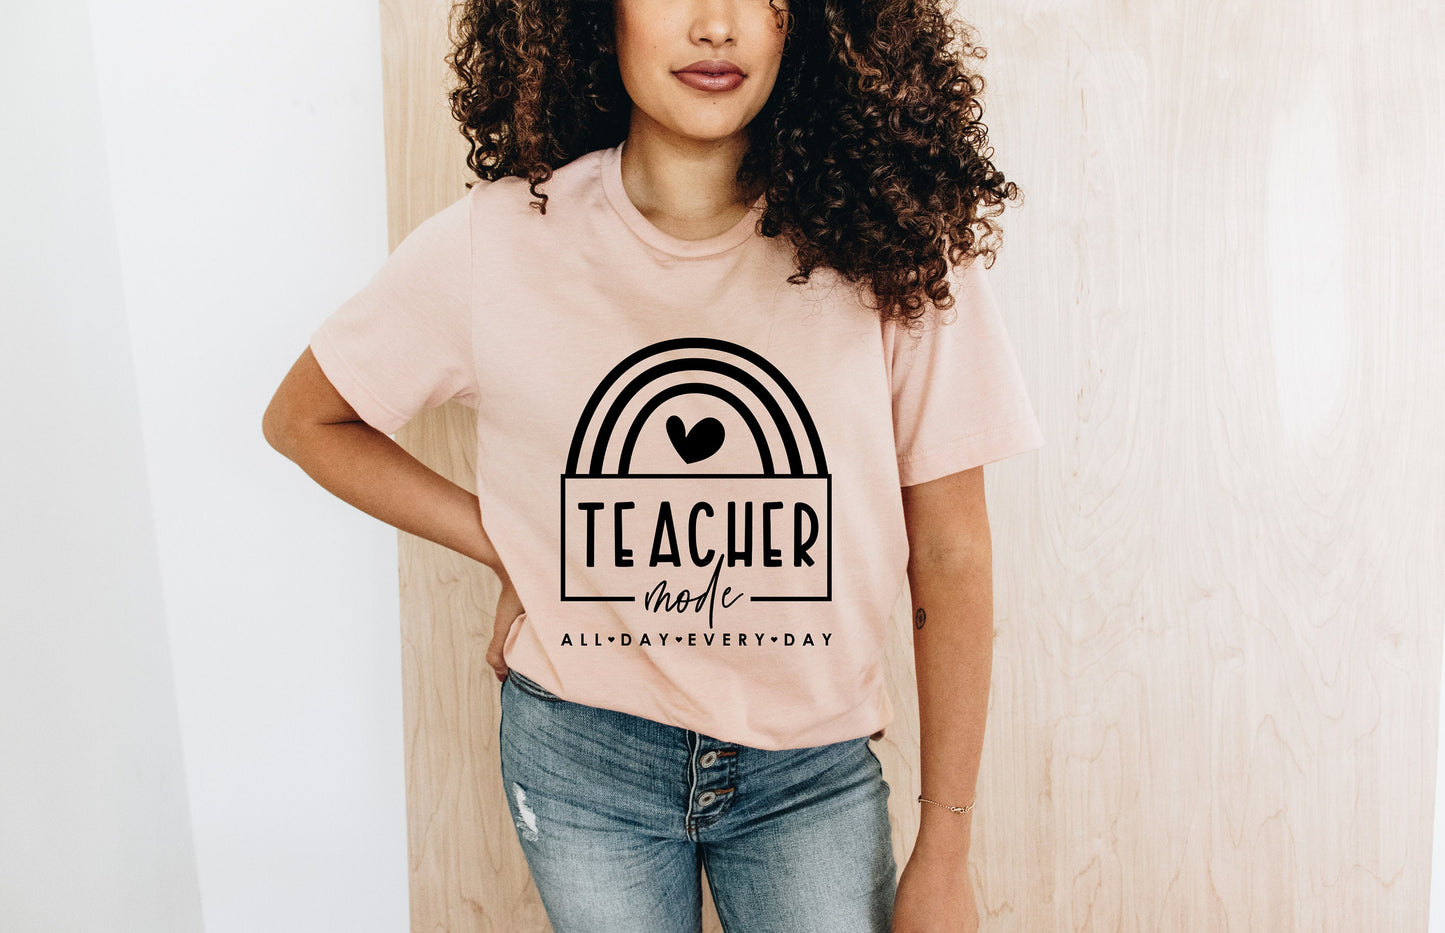 Teacher Mode Shirt - Gifts for Teachers